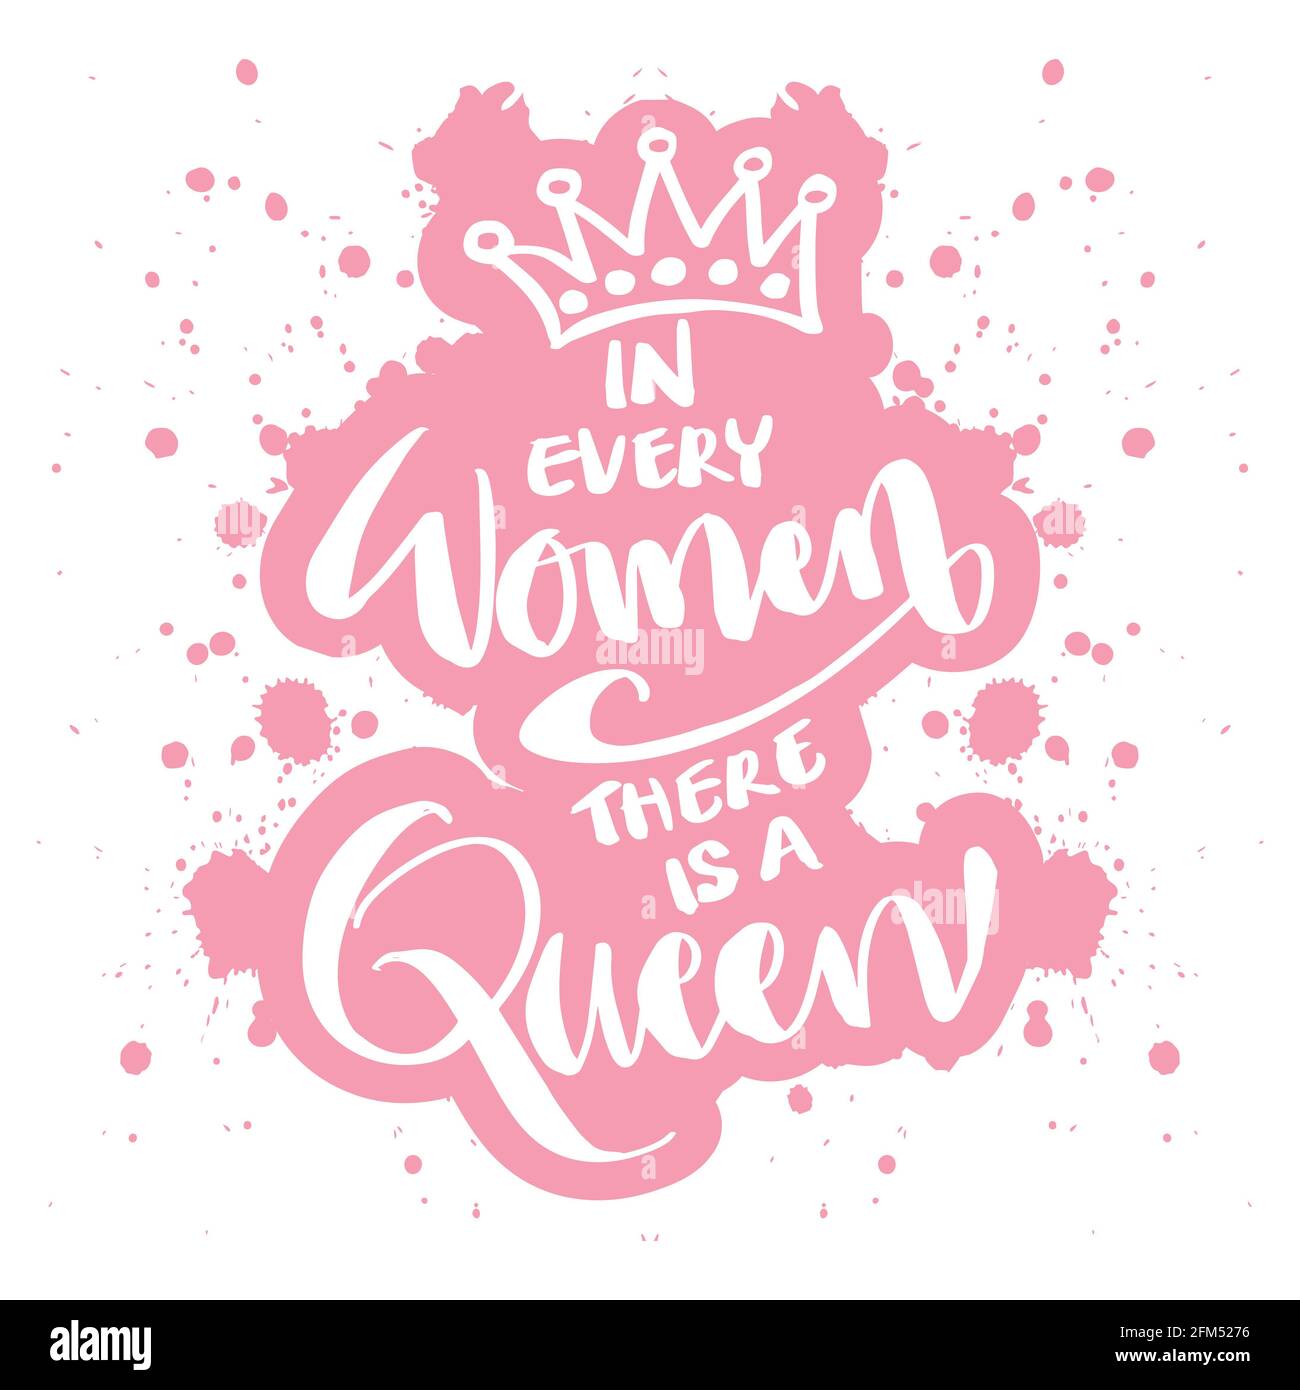 In ogni donna c'è una regina. Scritte a mano. Citazione motivazionale. Foto Stock